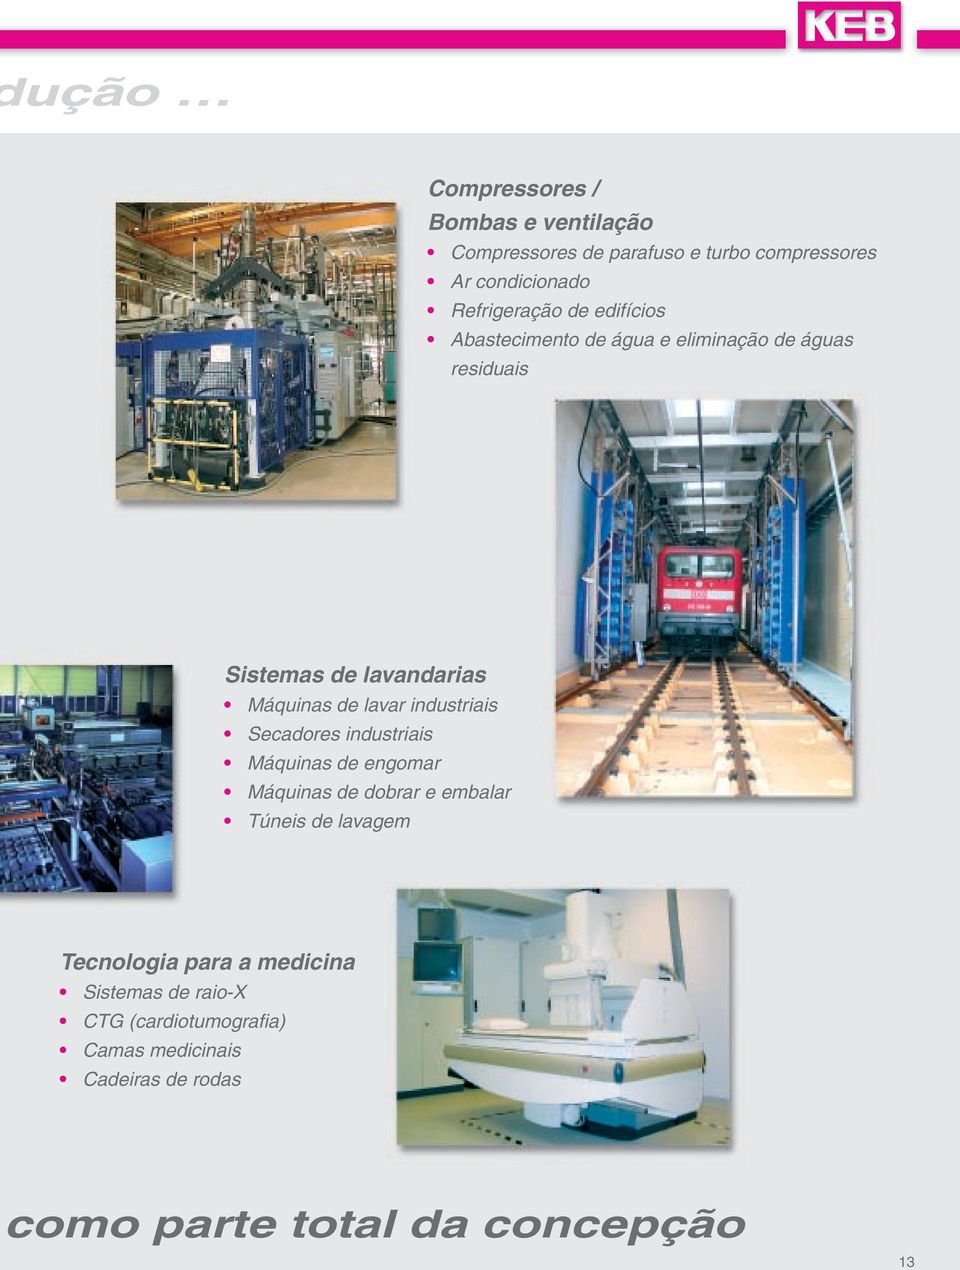 industriais Secadores industriais Máquinas de engomar Máquinas de dobrar e embalar Túneis de lavagem Tecnologia